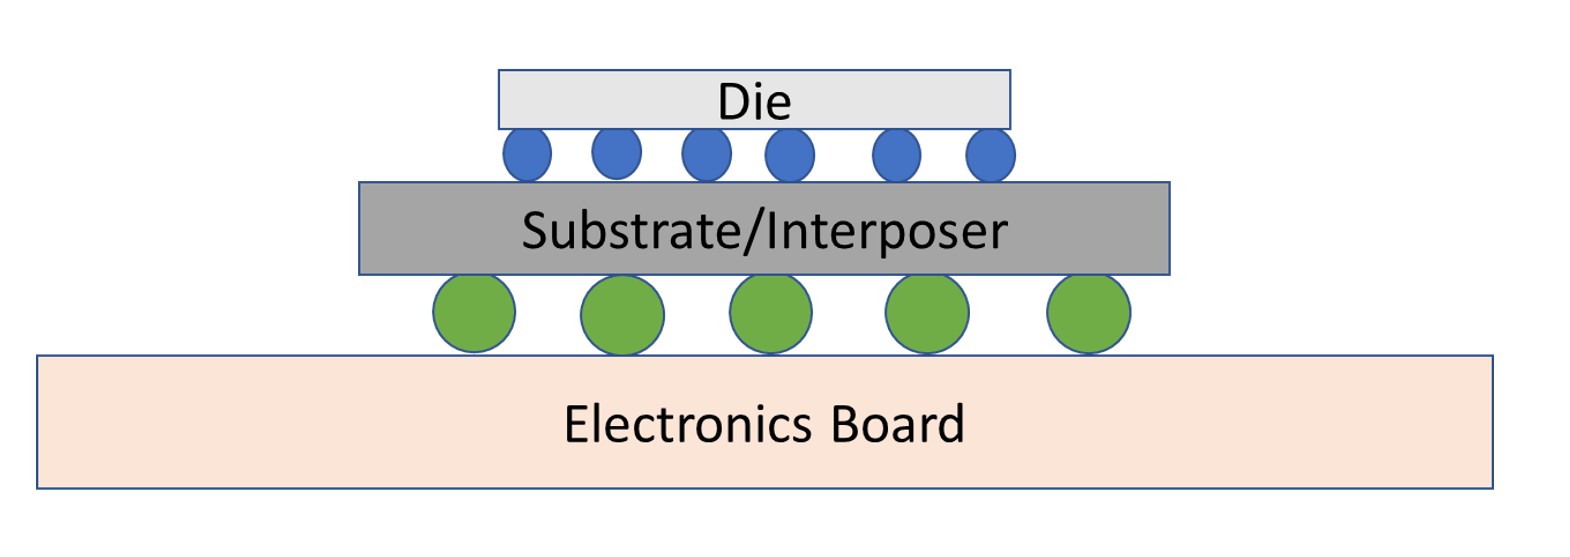 Ryc. 4: Schemat koncepcyjny opakowania typu flip-chip. Źródło: A. Meixner/Inżynieria półprzewodnikowa